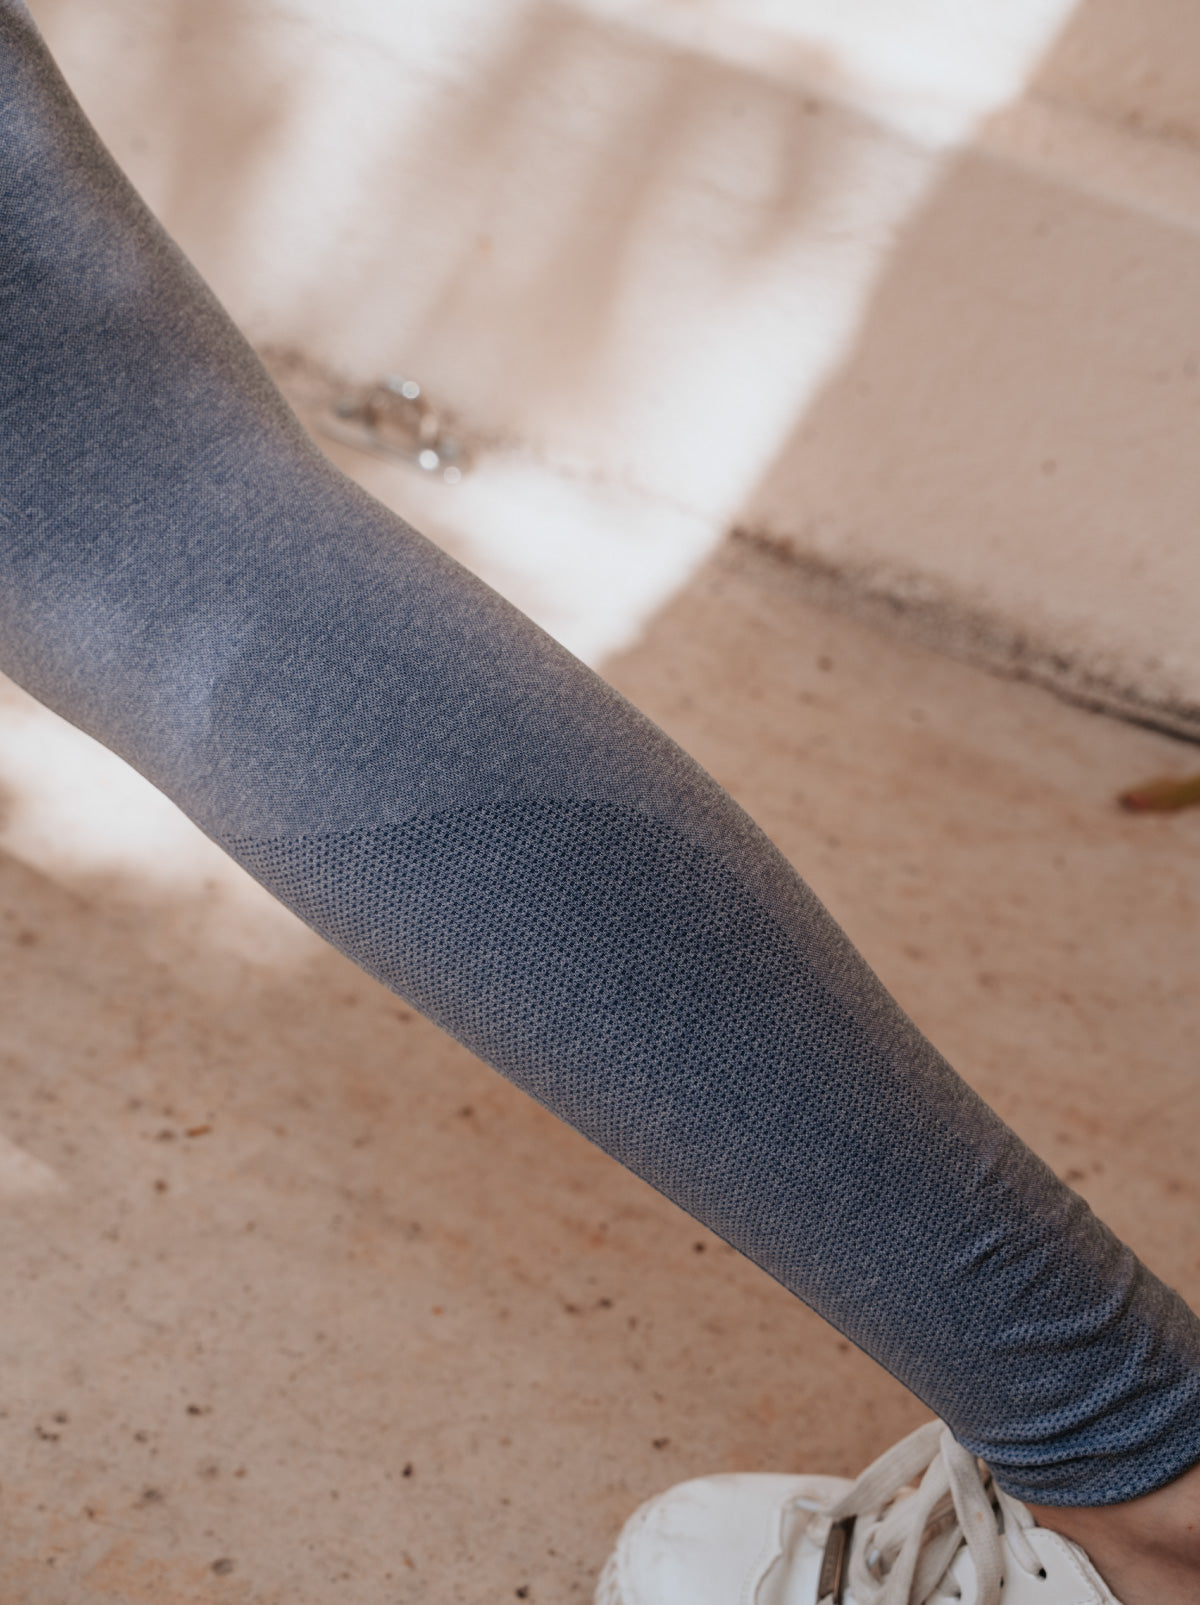 NU Concept Comfy Fresh 清新女神壓力褲，3倍彈力！輕盈自在輕塑身 清新專利 輕運動美學壓力褲，獨家3倍高彈力技術  ★輕量舒適更好穿脫，保持清新專利技術，修身有感秒變女神